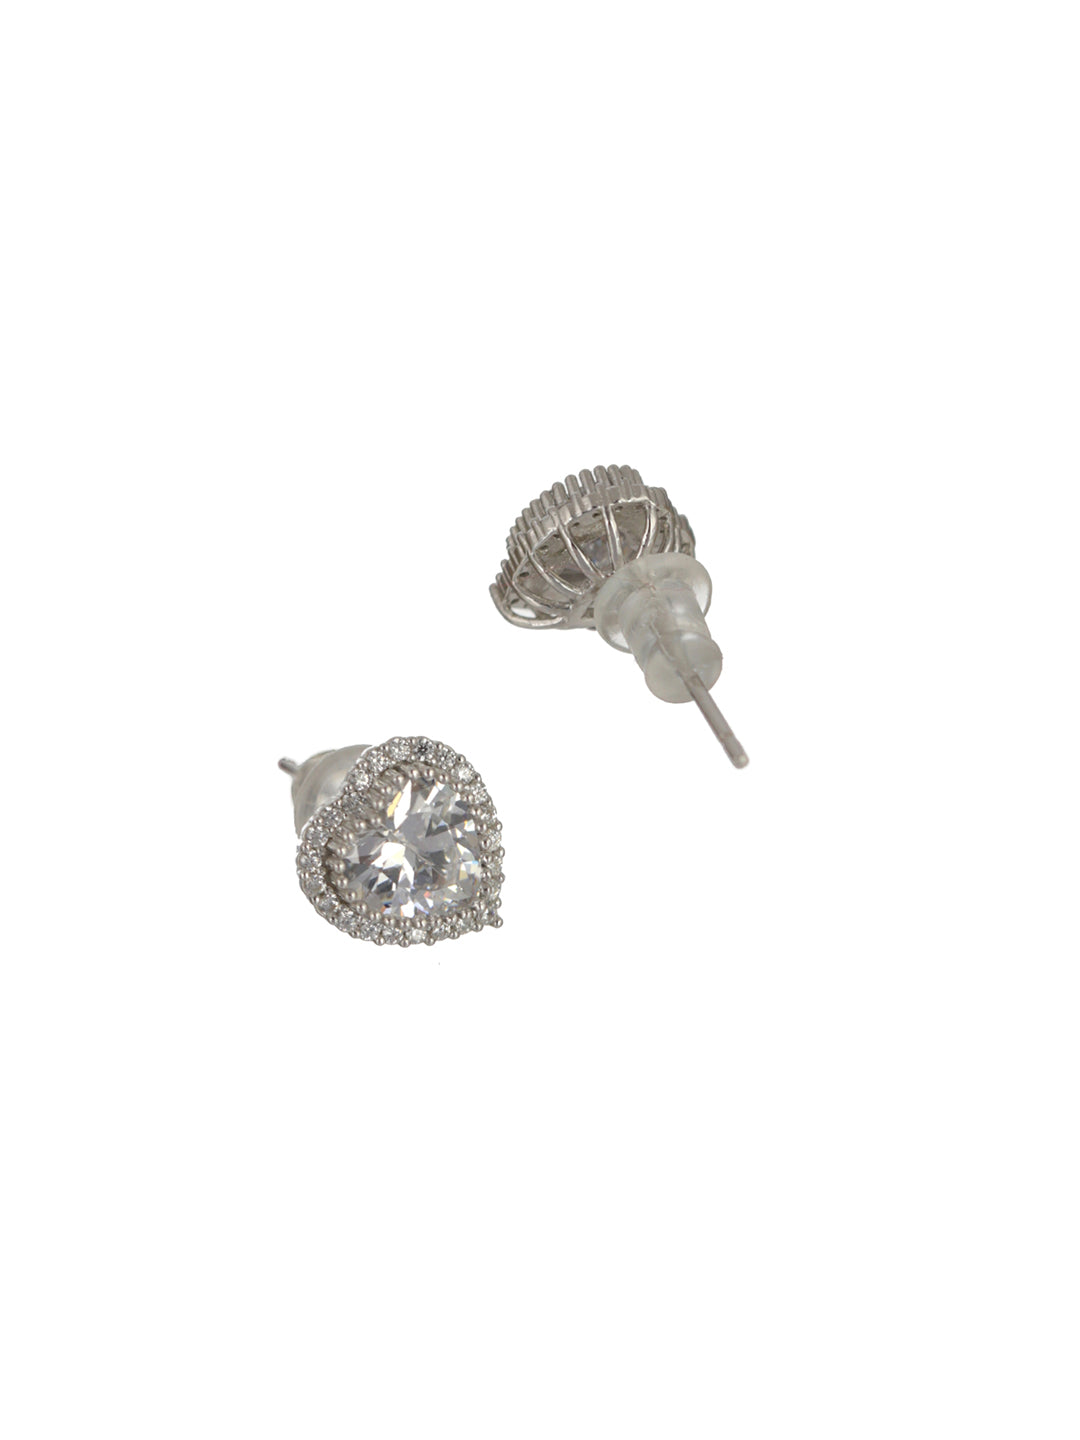 Sheer by Priyaasi Heart American Diamond Sterling Silver Earrings